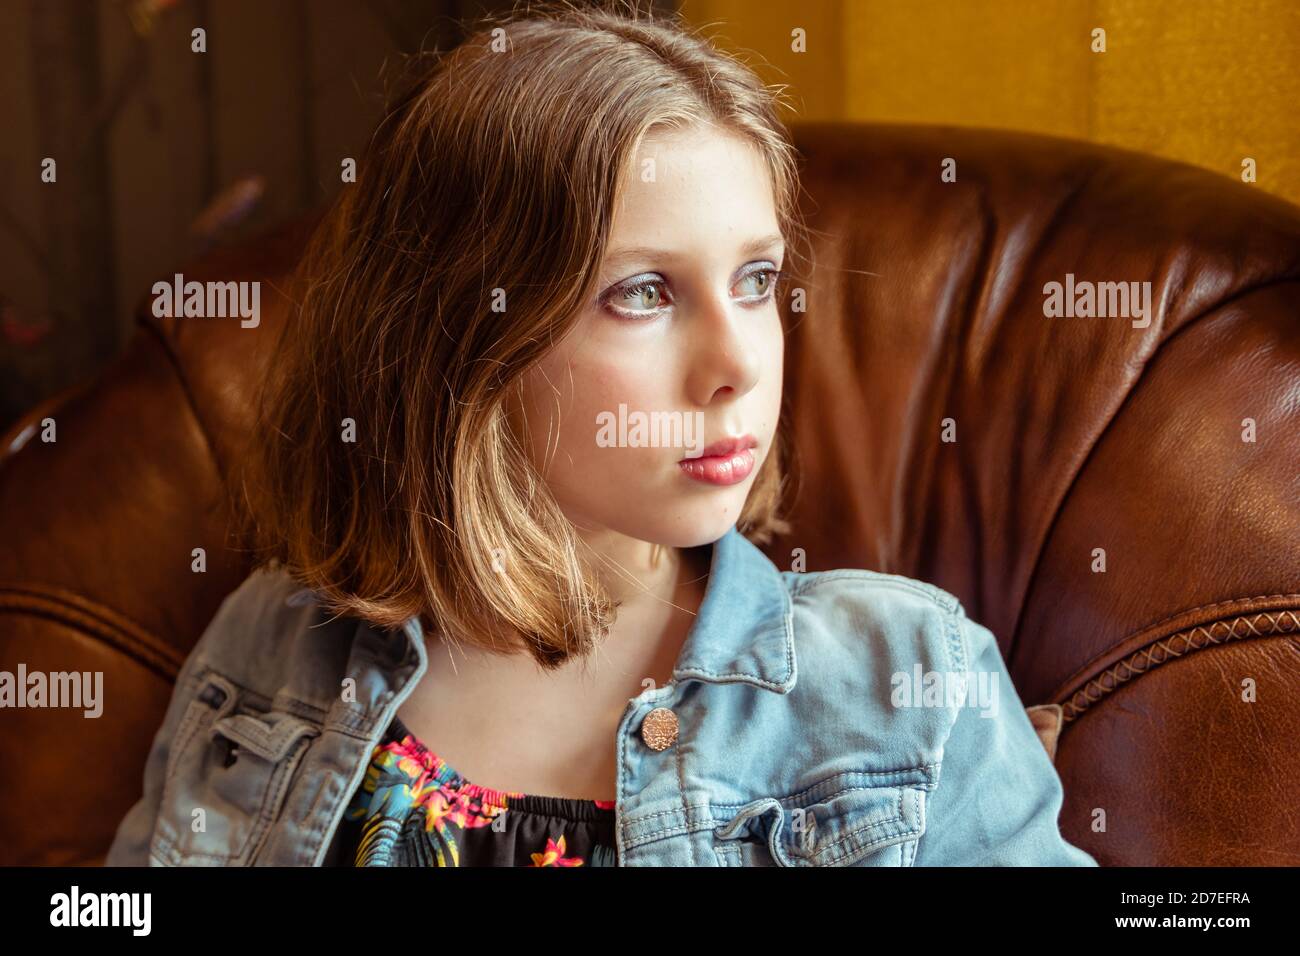 Ein natürliches Porträt eines Tweens oder Teenagers mit feinem Haar saß in einem Sessel, traurig oder melancholisch Nachdenklichkeit Stockfoto